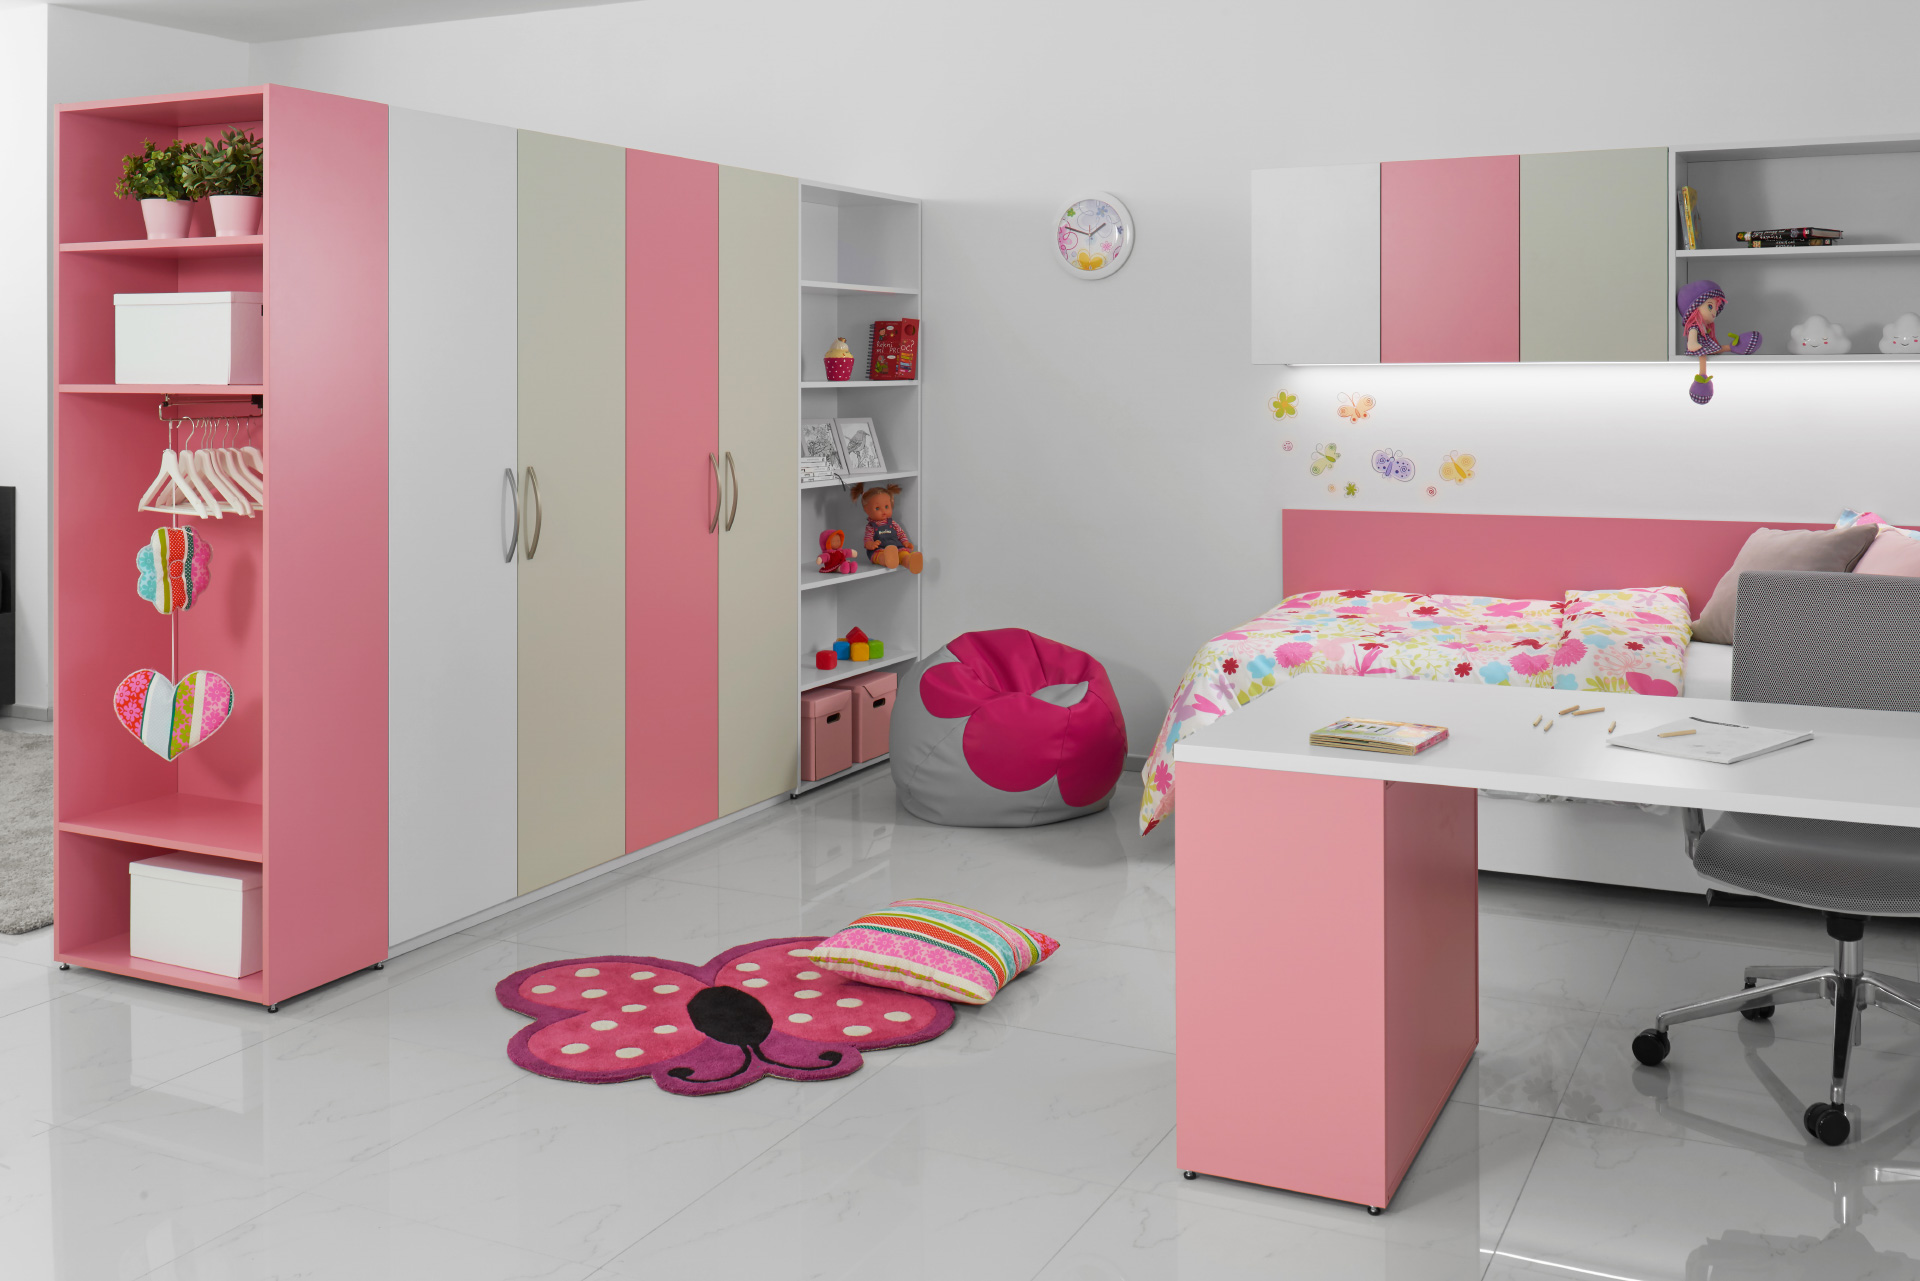 Hanák nábytek room for little girls